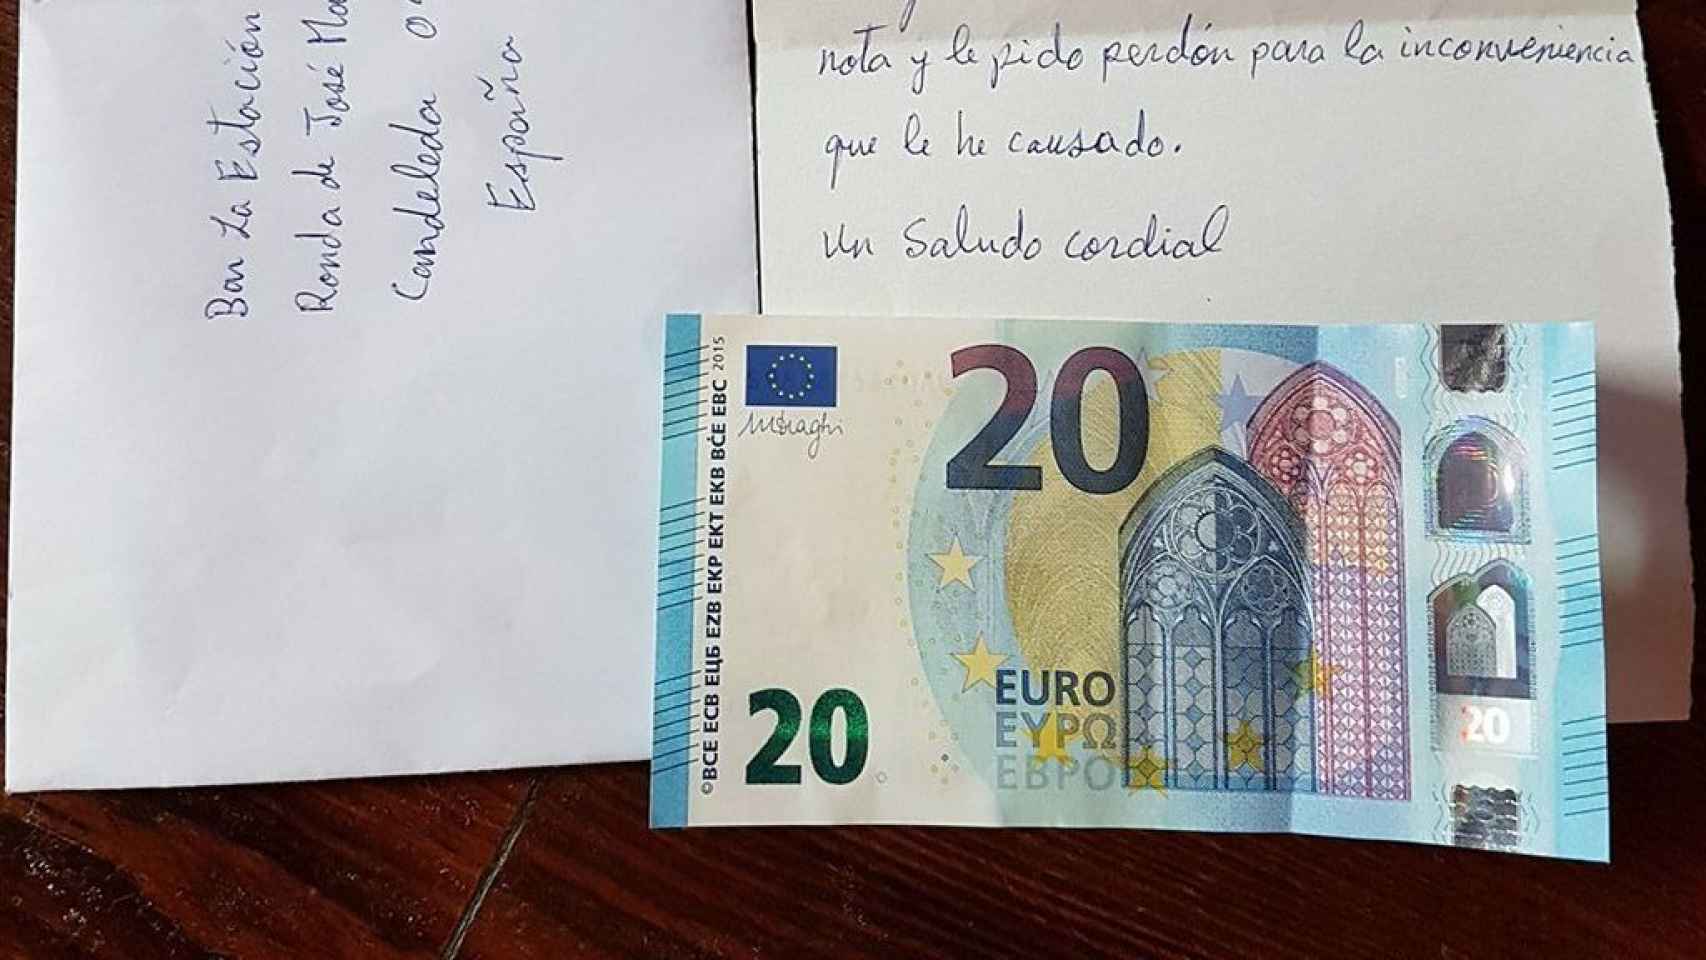 La carta que envió el cliente que se fue sin pagar al Bar La Estación de Candeleda (Ávila).